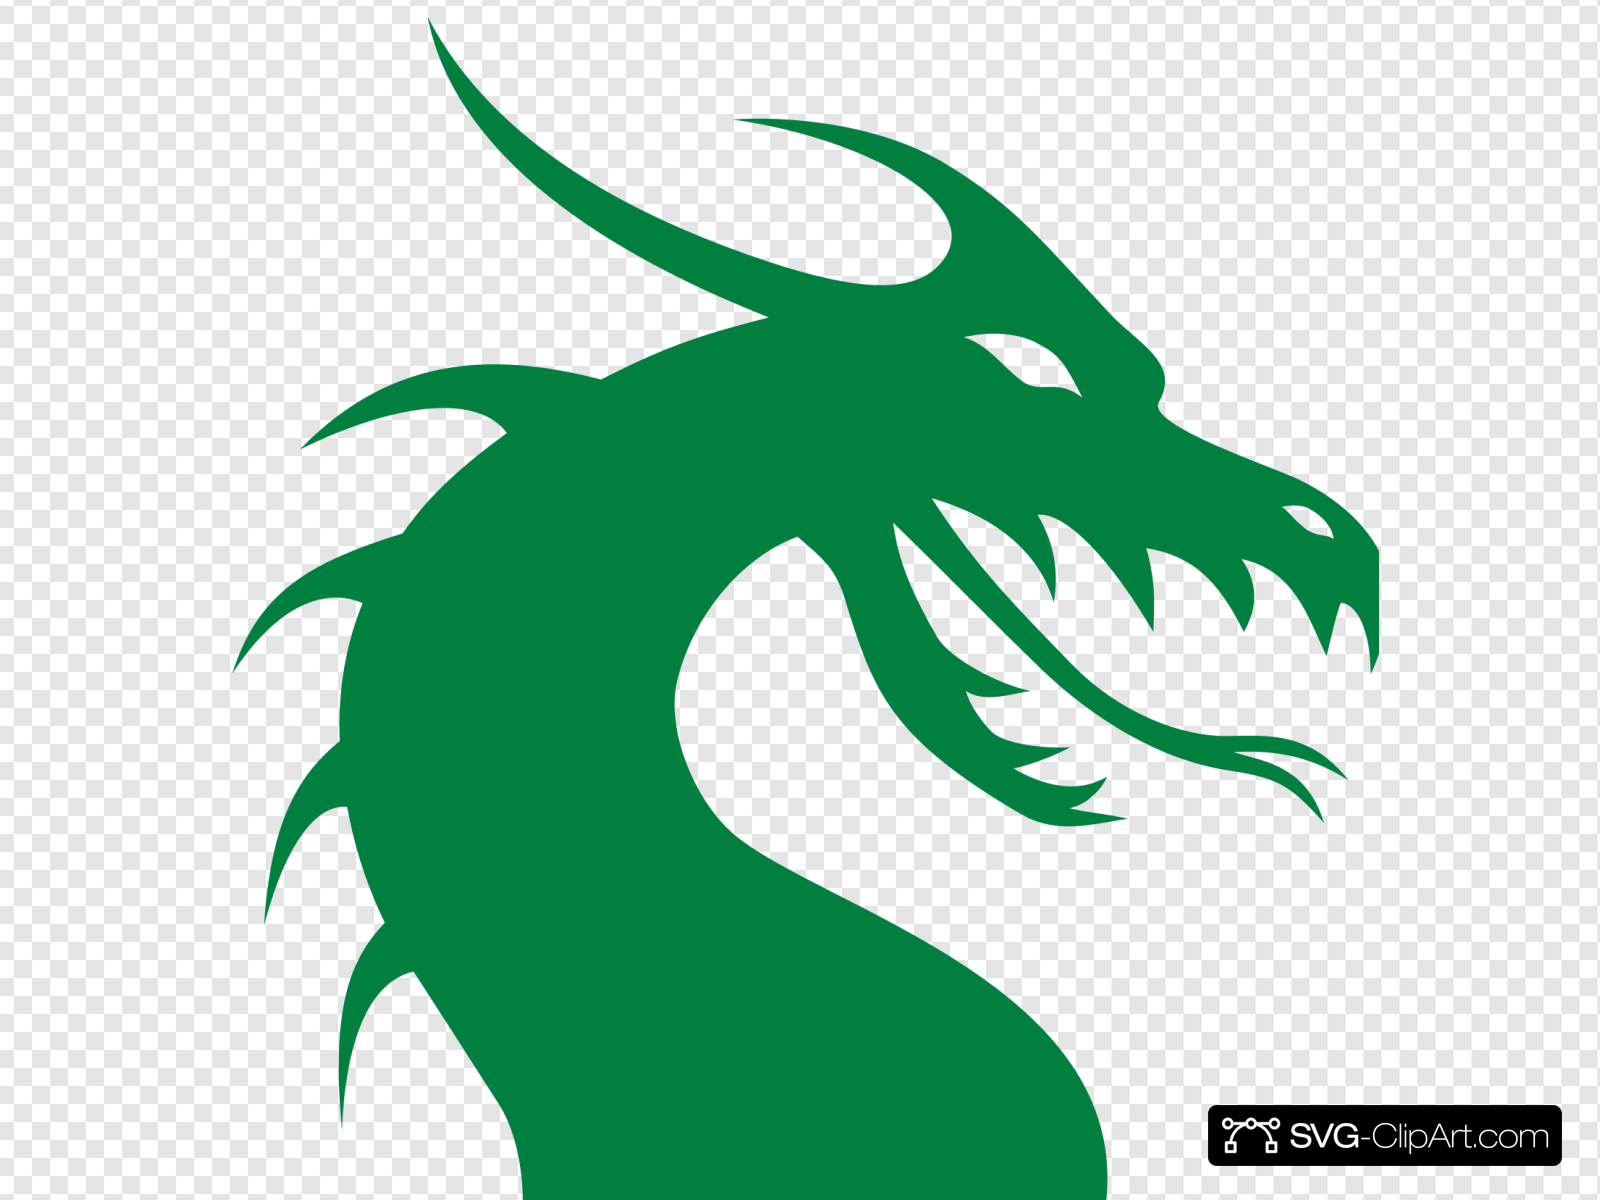 Clip art icon and. Clipart dragon green dragon